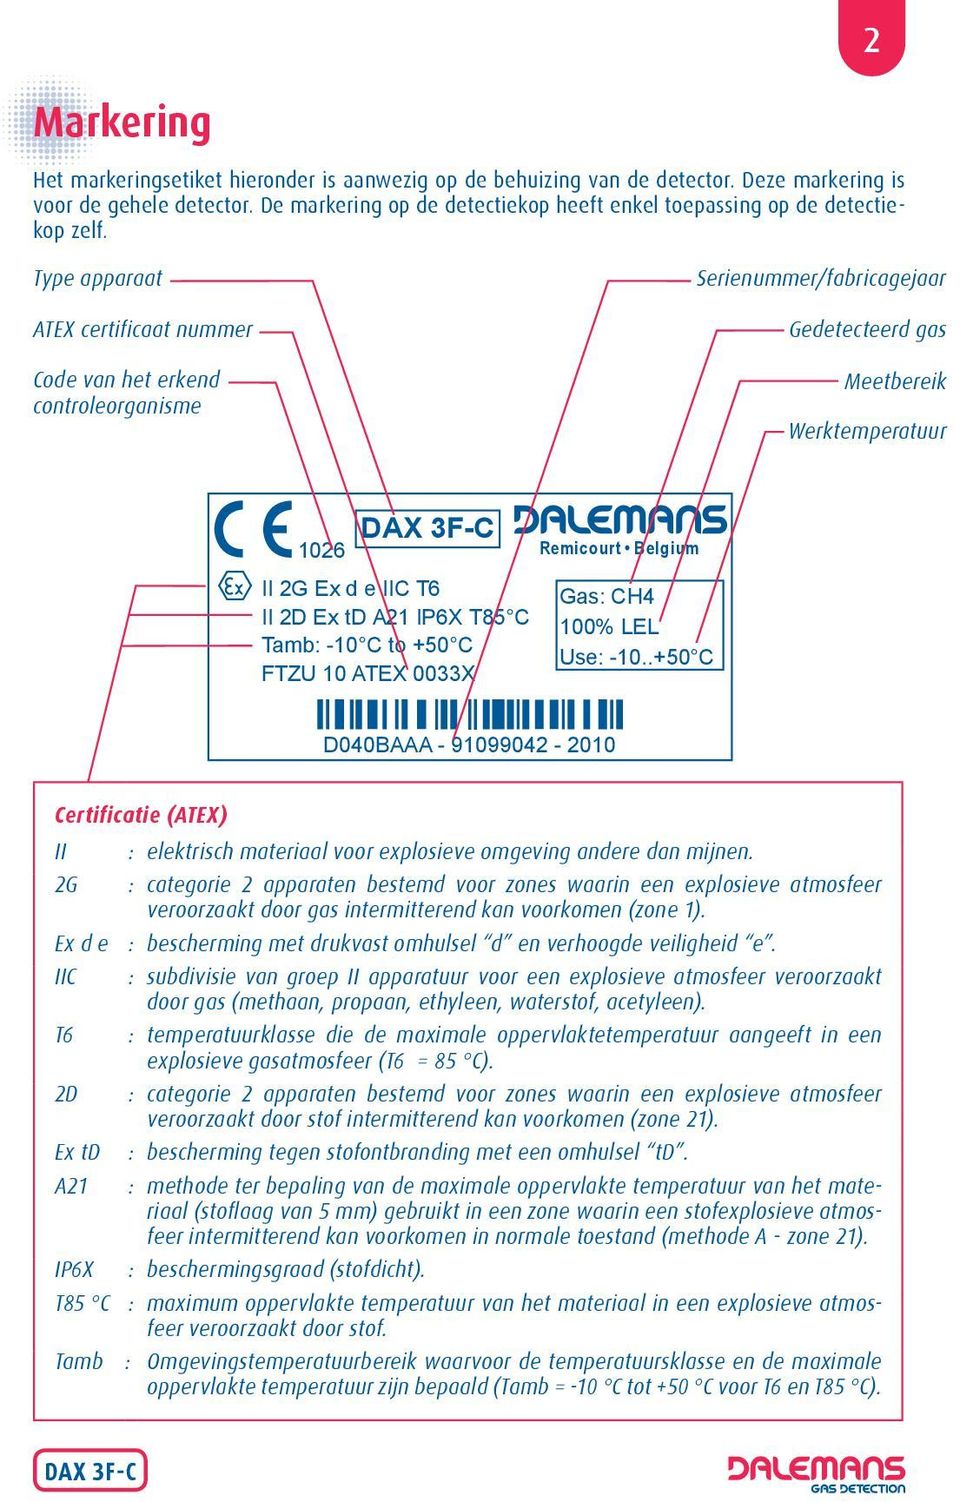 2 Type apparaat ATEX certificaat nummer Code van het erkend controleorganisme Serienummer/fabricagejaar Gedetecteerd gas Meetbereik Werktemperatuur 1026 II 2G Ex d e IIC T6 II 2D Ex td A21 IP6X T85 C